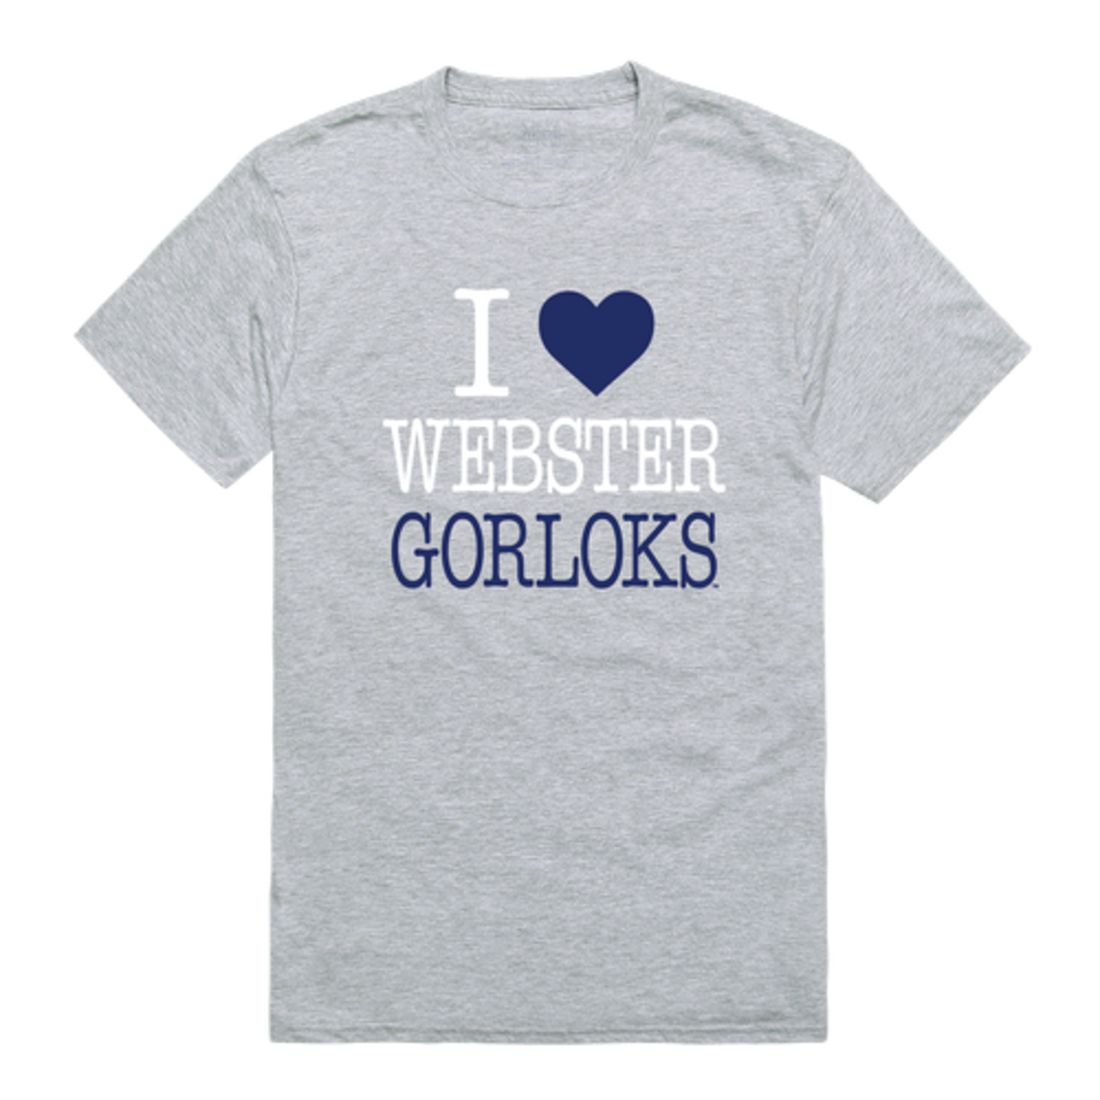 I Love Webster University Gorlocks T-Shirt Tee